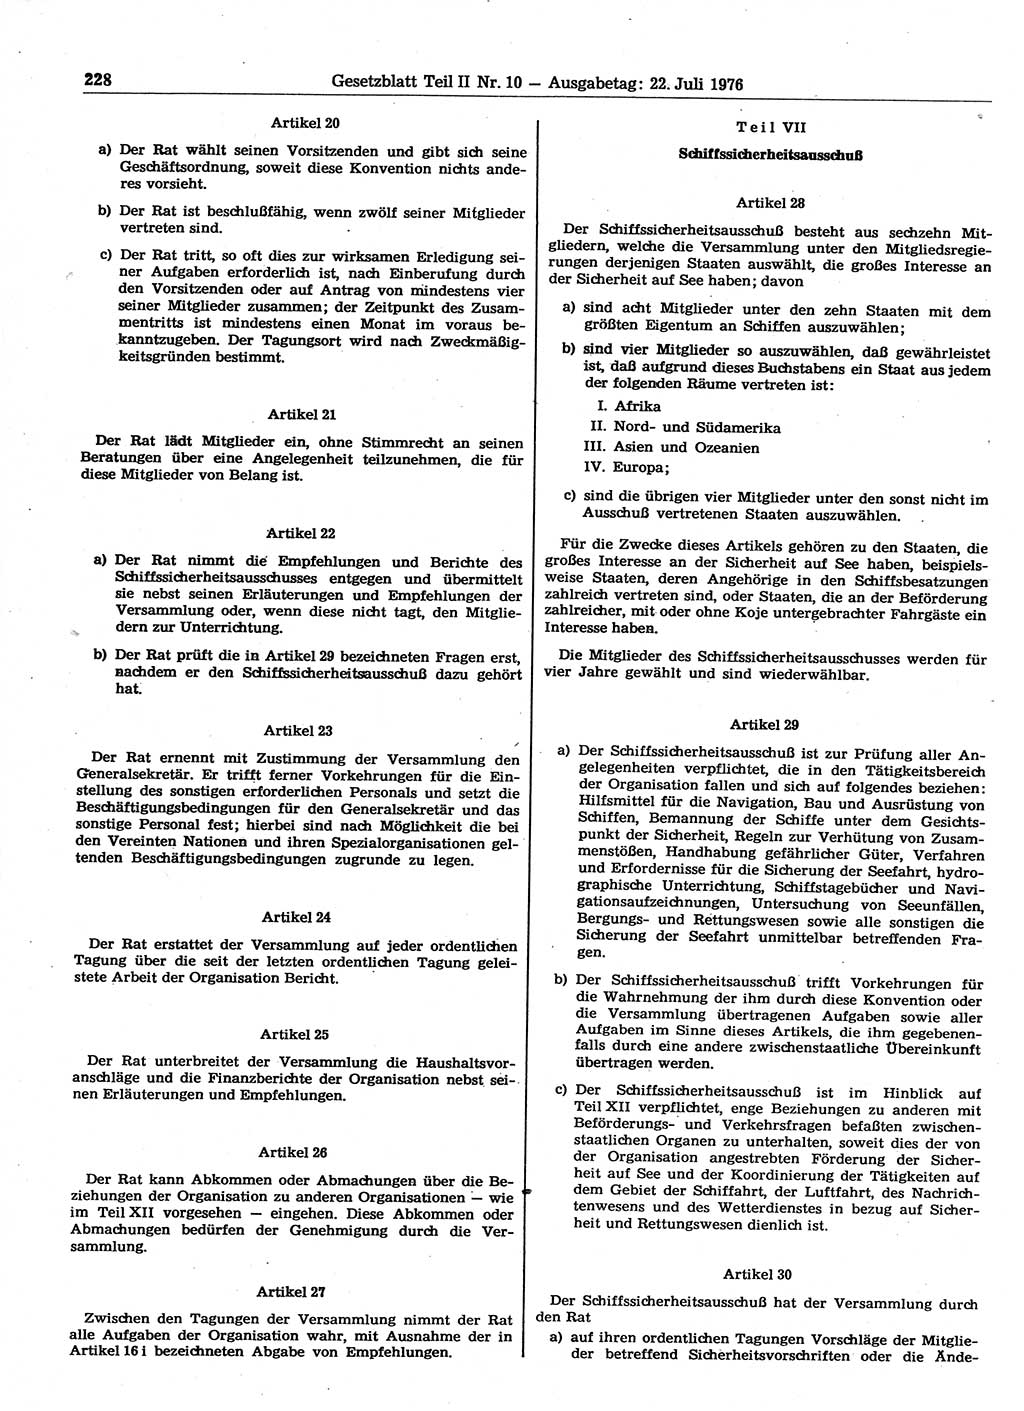 Gesetzblatt (GBl.) der Deutschen Demokratischen Republik (DDR) Teil ⅠⅠ 1976, Seite 228 (GBl. DDR ⅠⅠ 1976, S. 228)